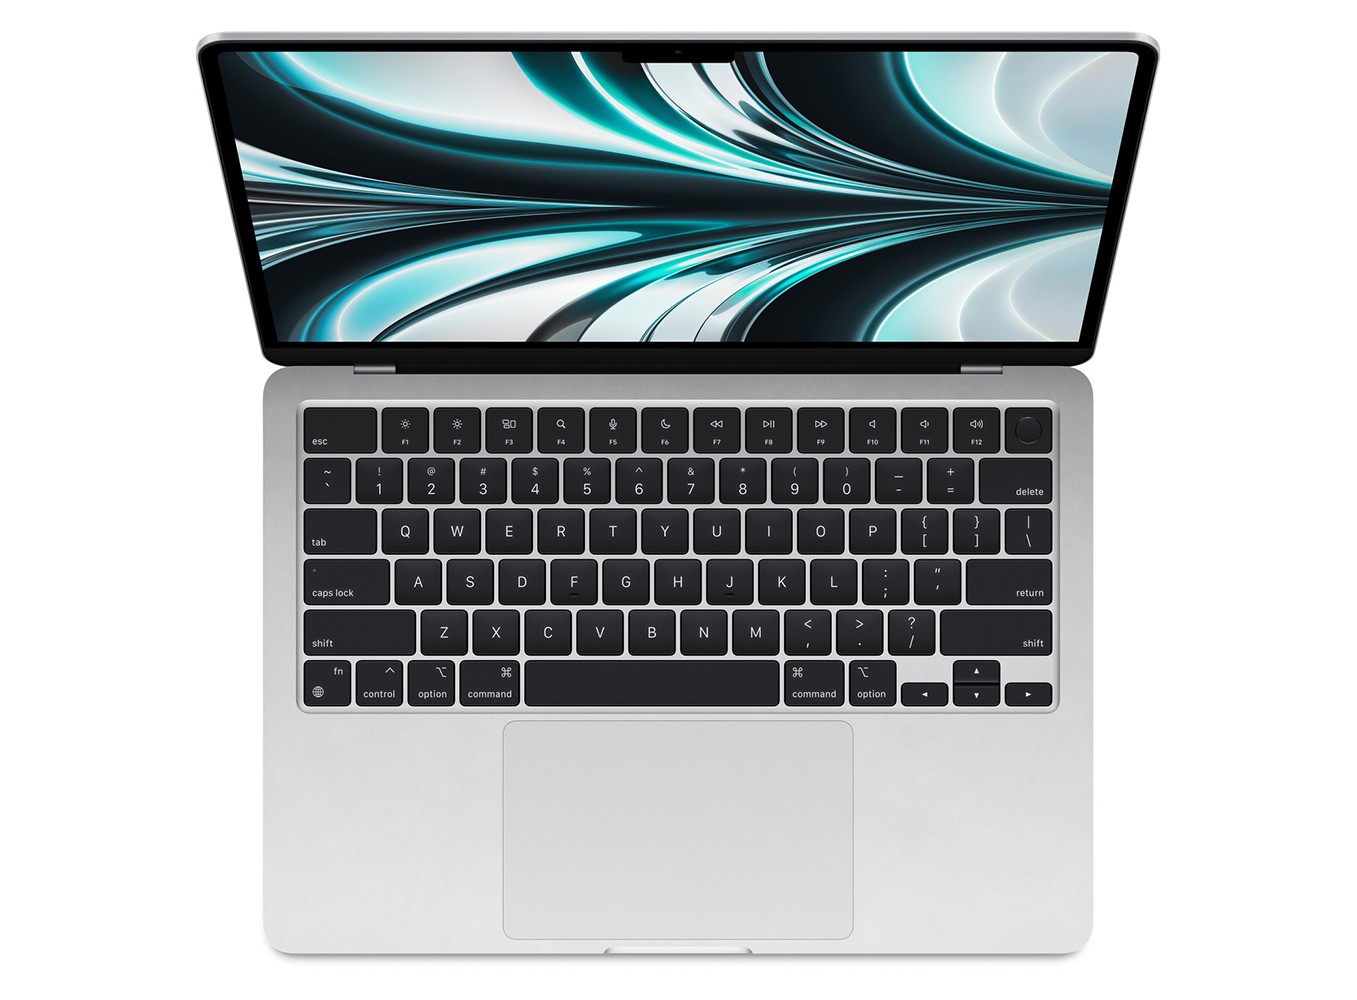 Silver MacBook Air: Thiết kế mỏng nhẹ, màu sắc trang nhã pha lẫn chút hiện đại, chiếc MacBook Air bạc kim loại sẽ khiến bạn say đắm ngay từ cái nhìn đầu tiên. Khám phá và trải nghiệm sự tiên tiến và cao cấp của MacBook Air bạc này ngay hôm nay!